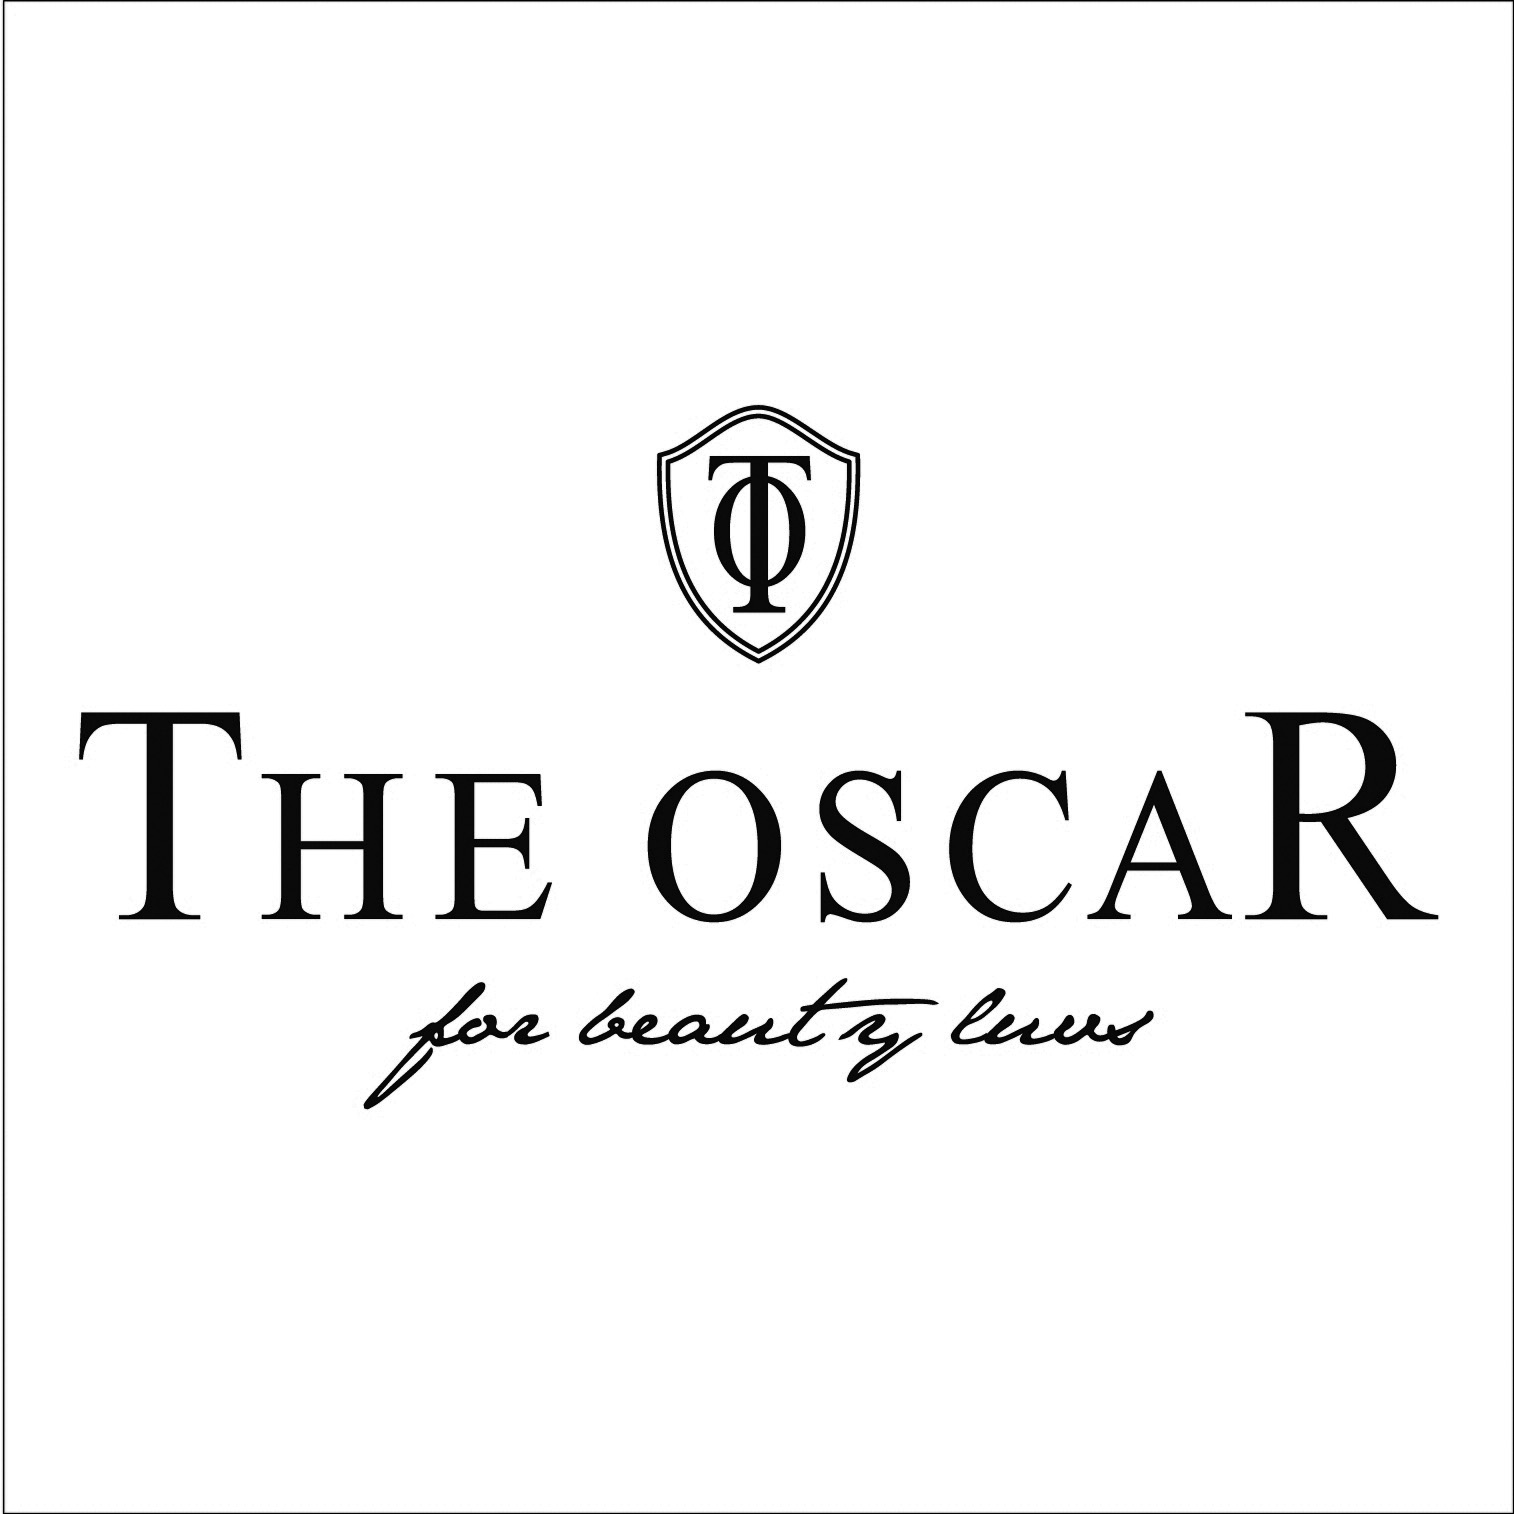 THE OSCAR